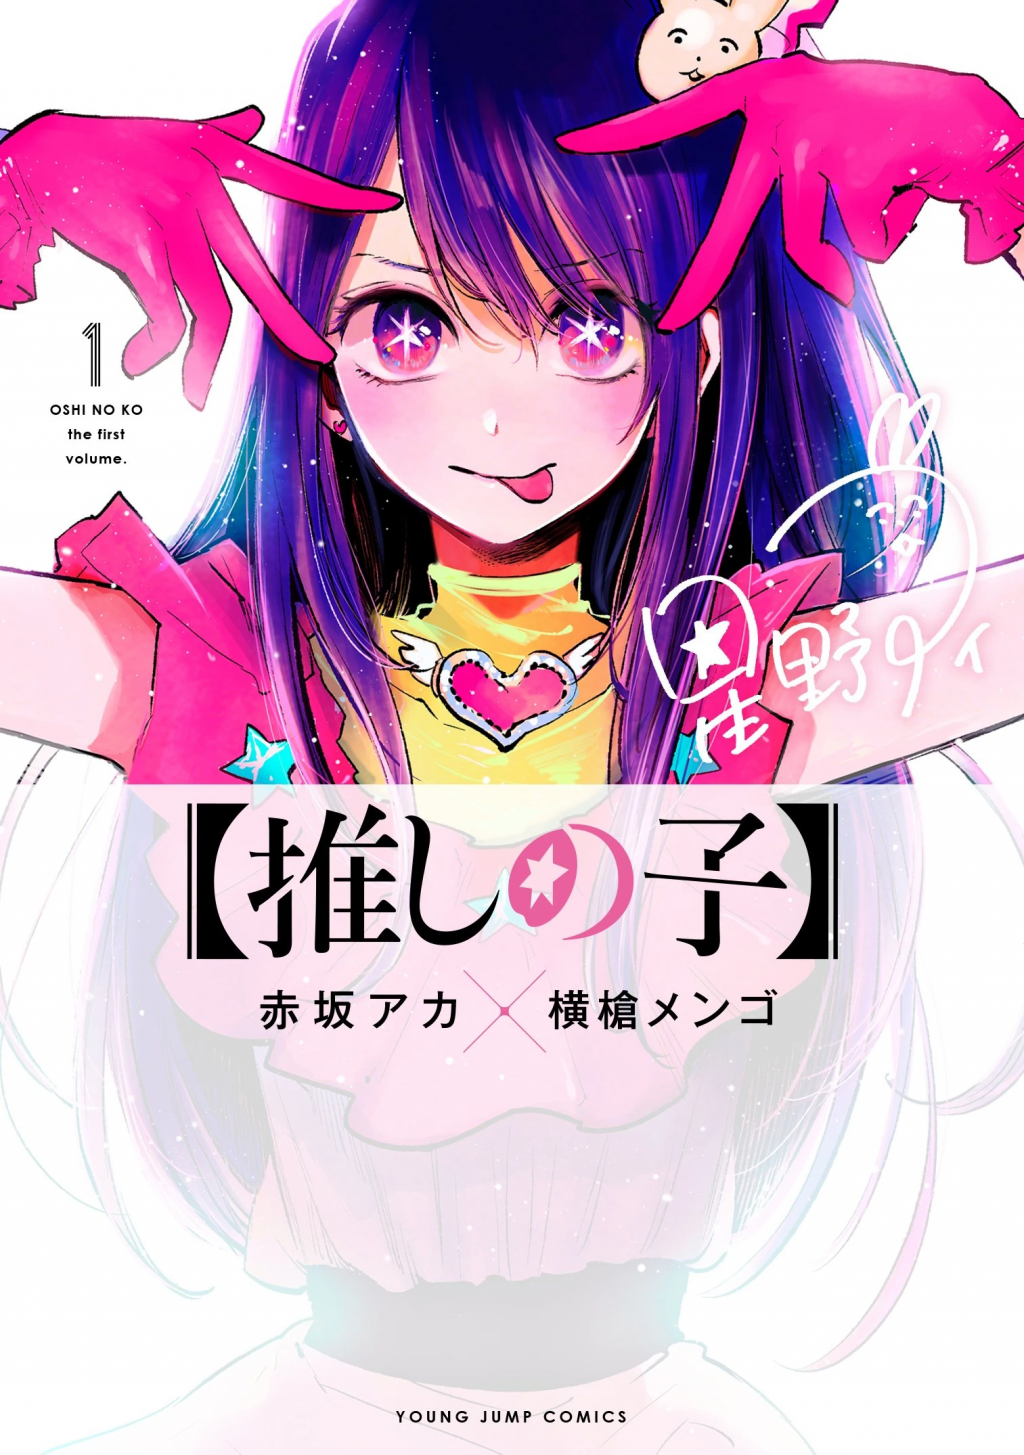 Oshi no Ko Anime lässt Aprilscherz zur Realität werden - Crunchyroll News